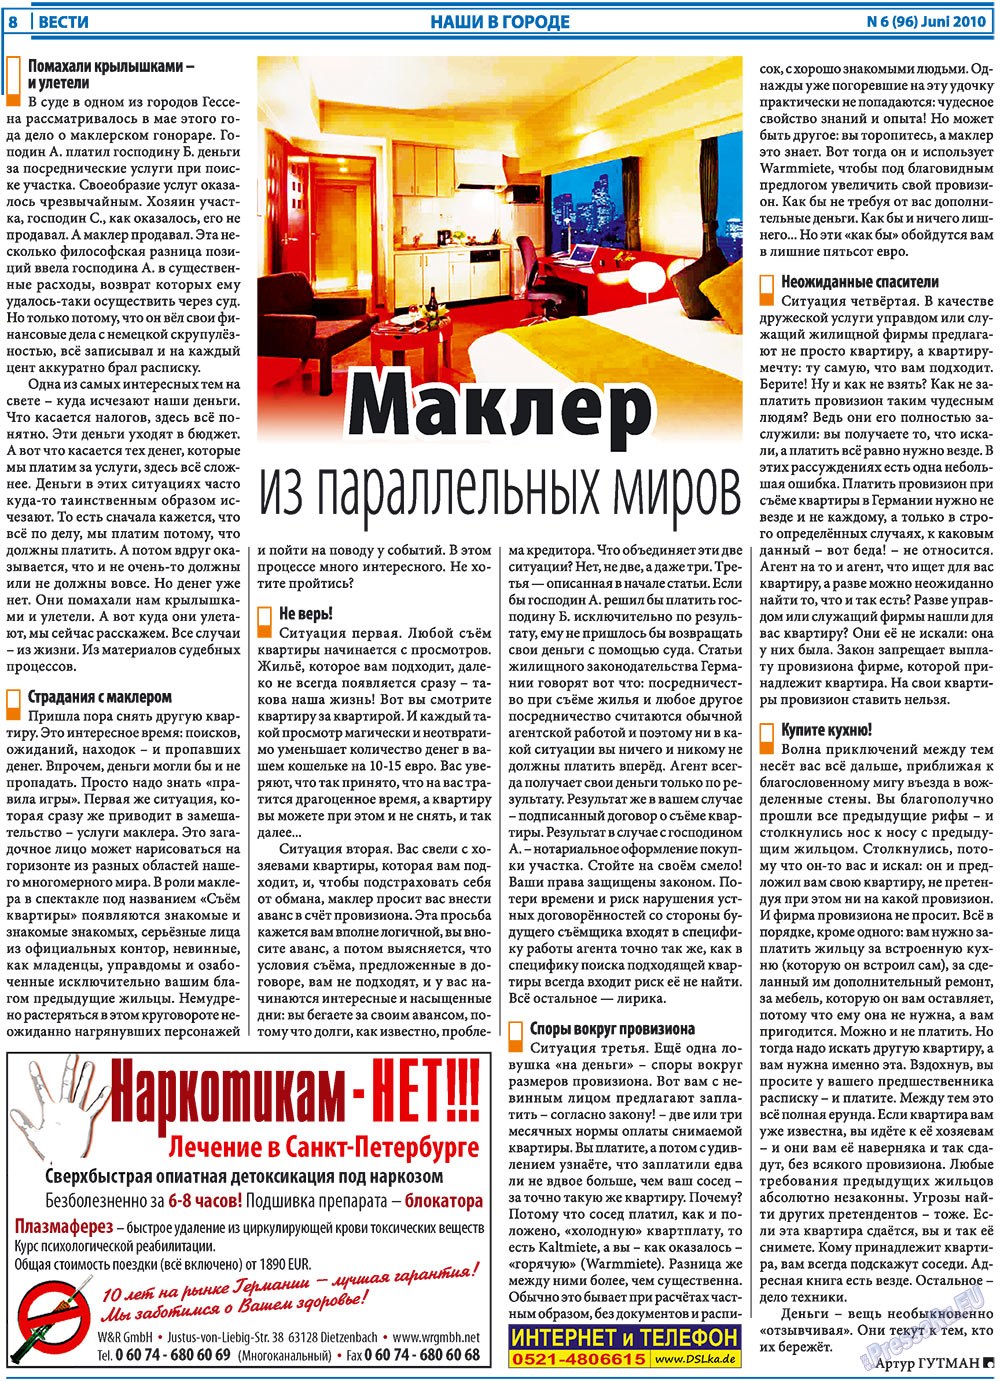 Вести, газета. 2010 №6 стр.8